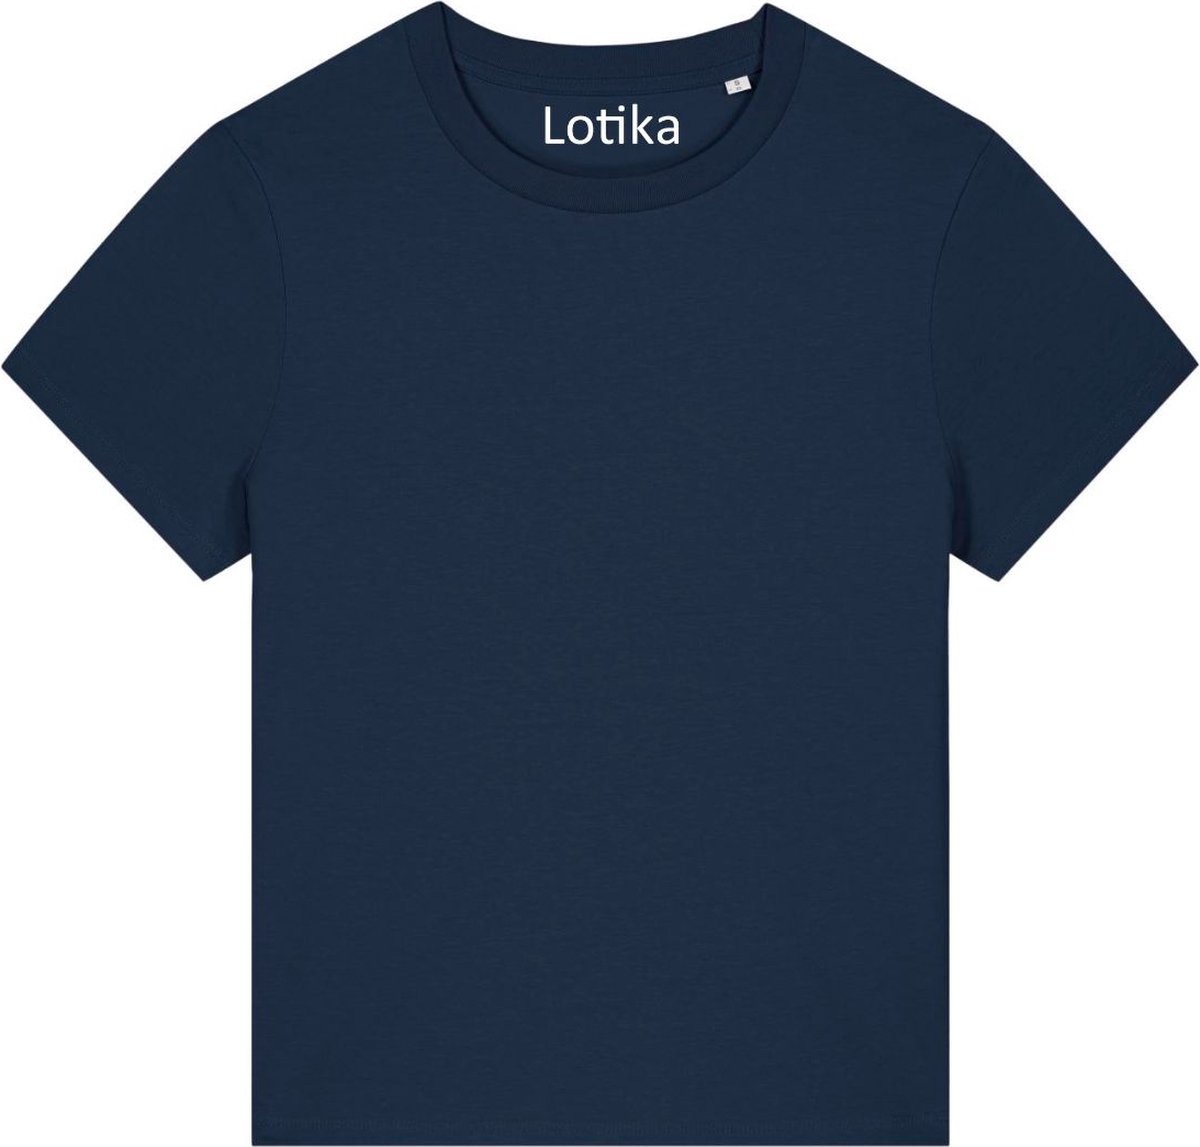 Lotika - Saar T-shirt dames biologisch katoen - navy